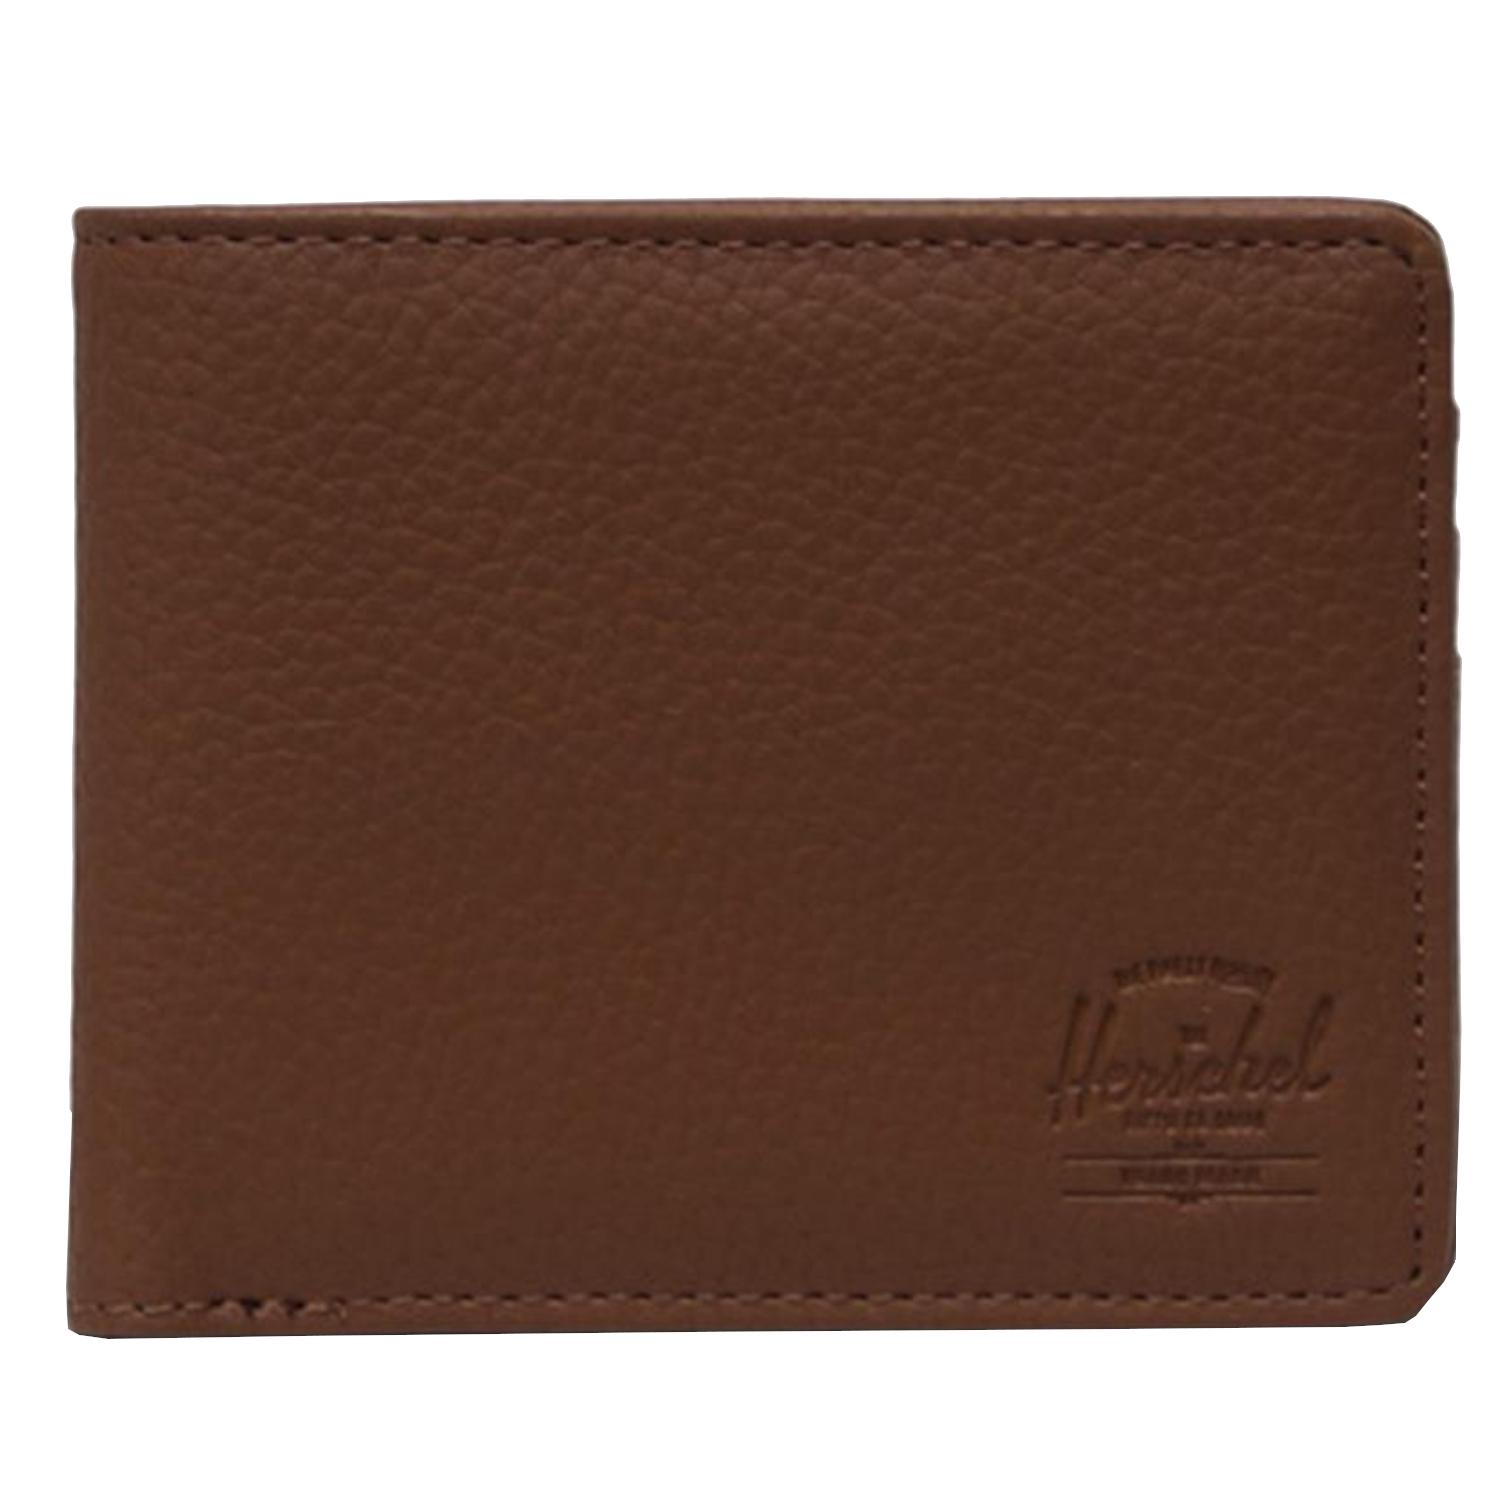 Herschel Roy RFID portemonnee, unisex bruine portemonnee